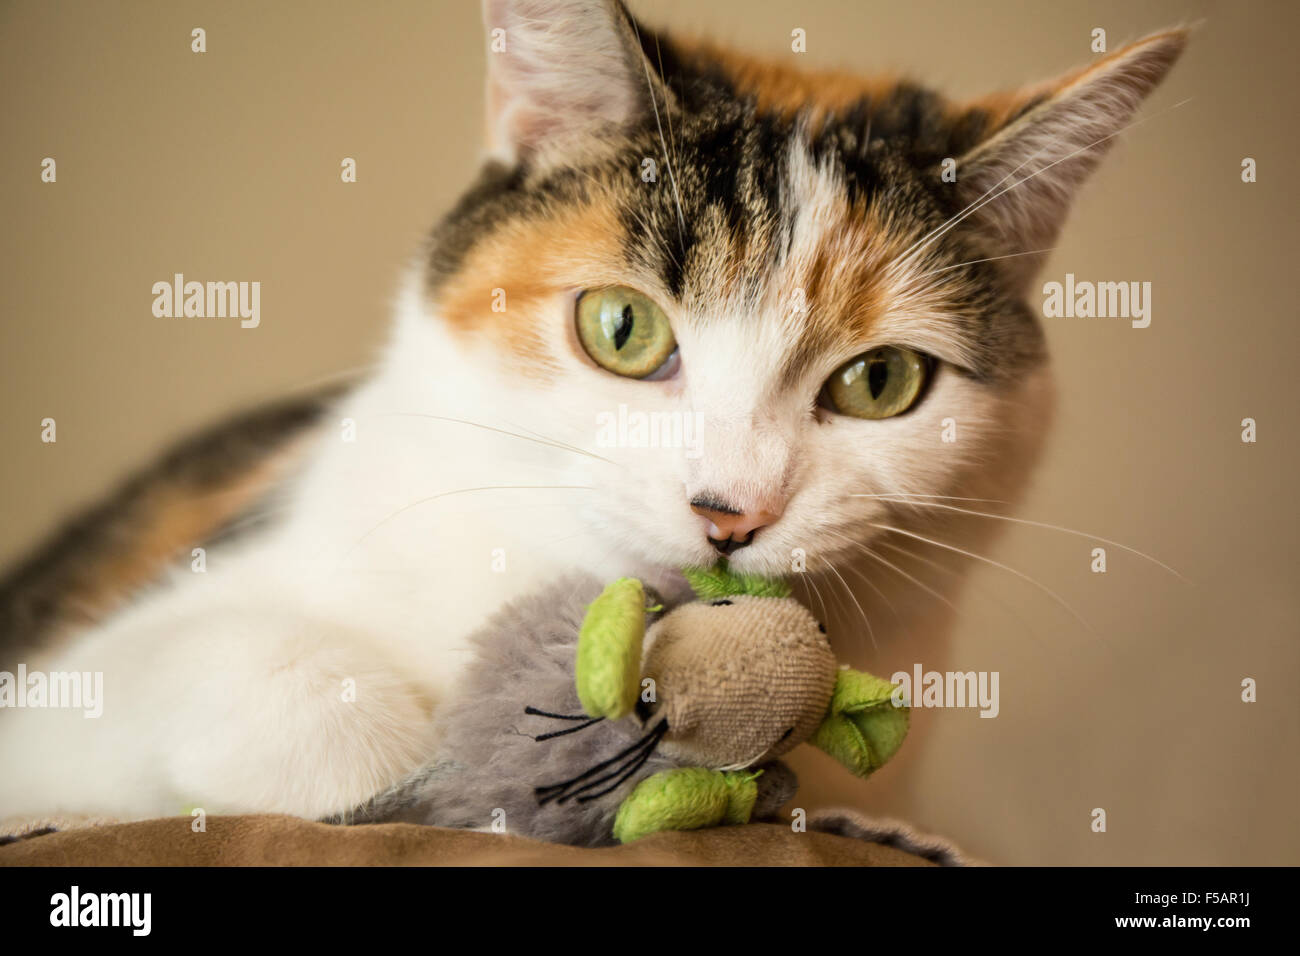 Portrait de Molly, un chat calico, tenant son jouet souris préférés Banque D'Images